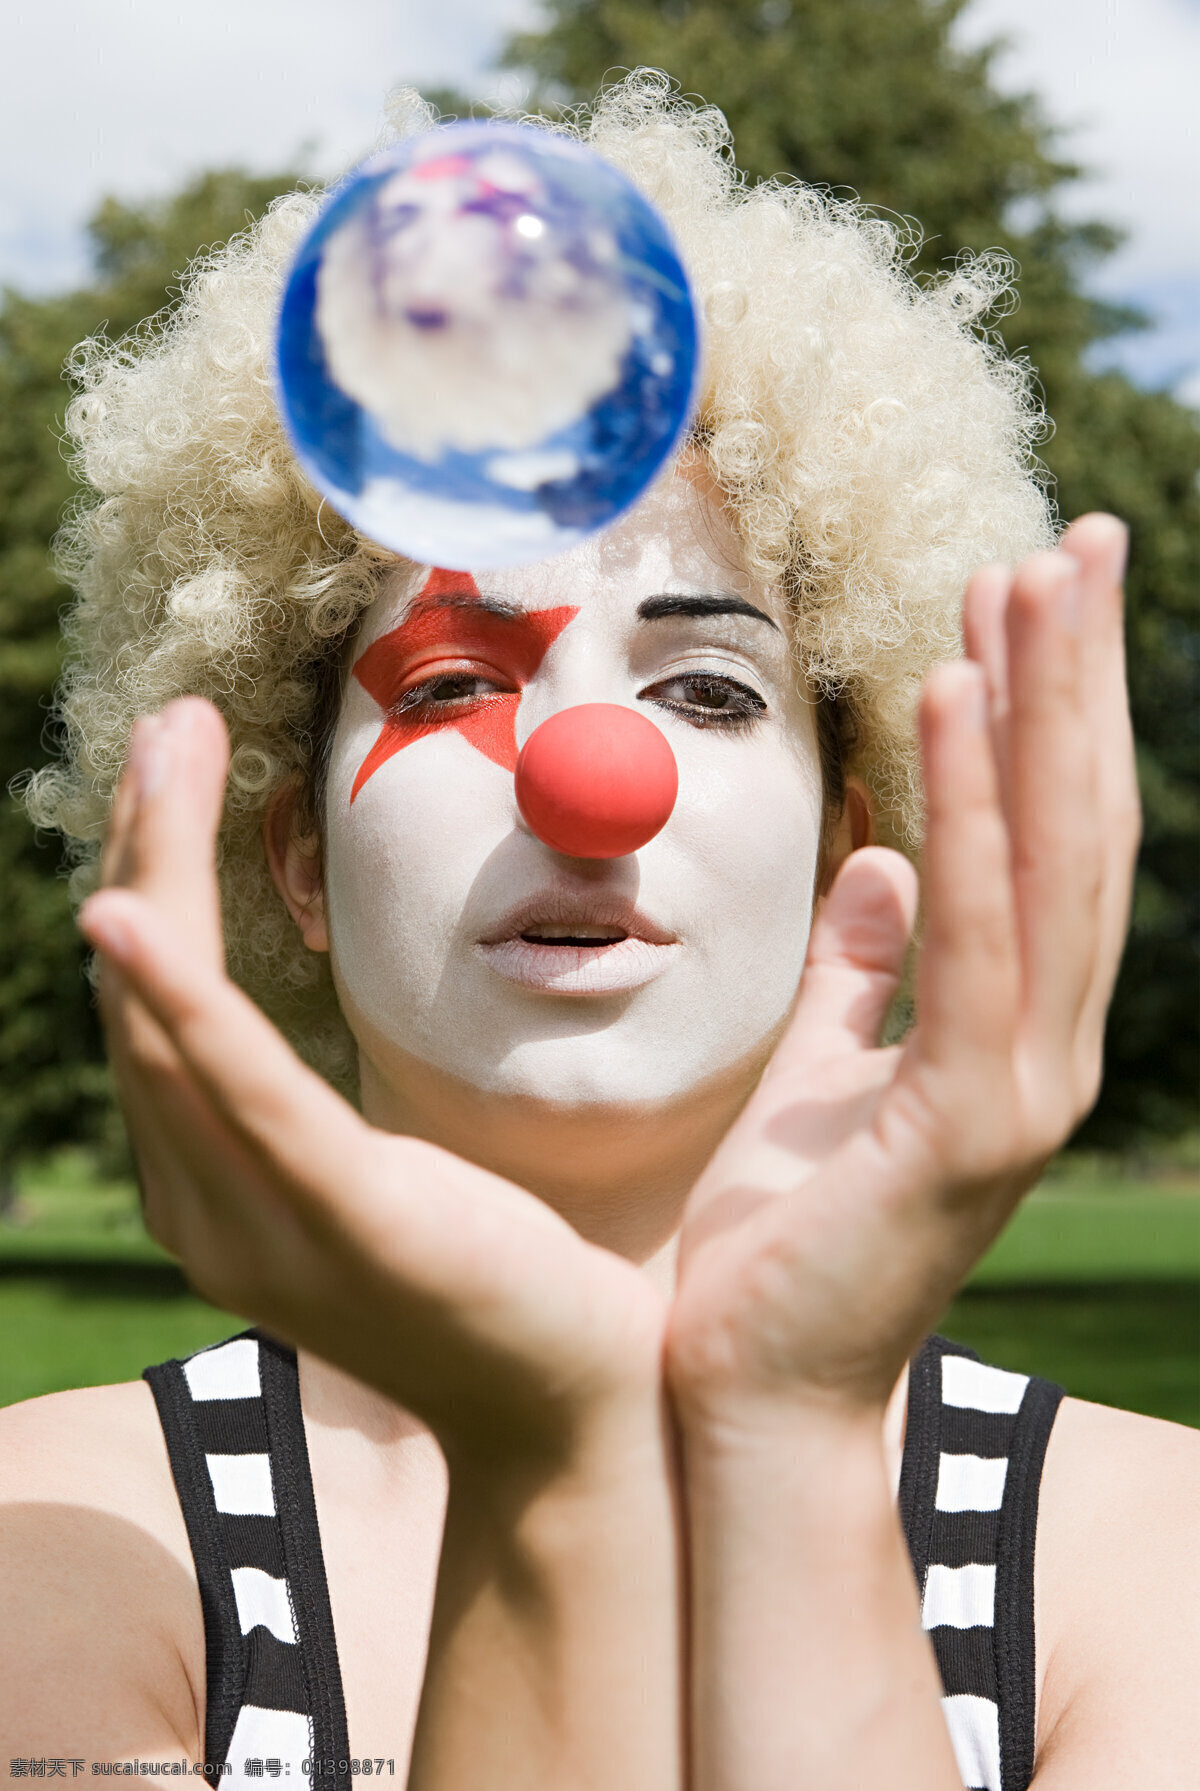 捧 水晶球 小丑 女性小丑 小丑演员 马戏演员 马戏团人物 生活人物 人物图片